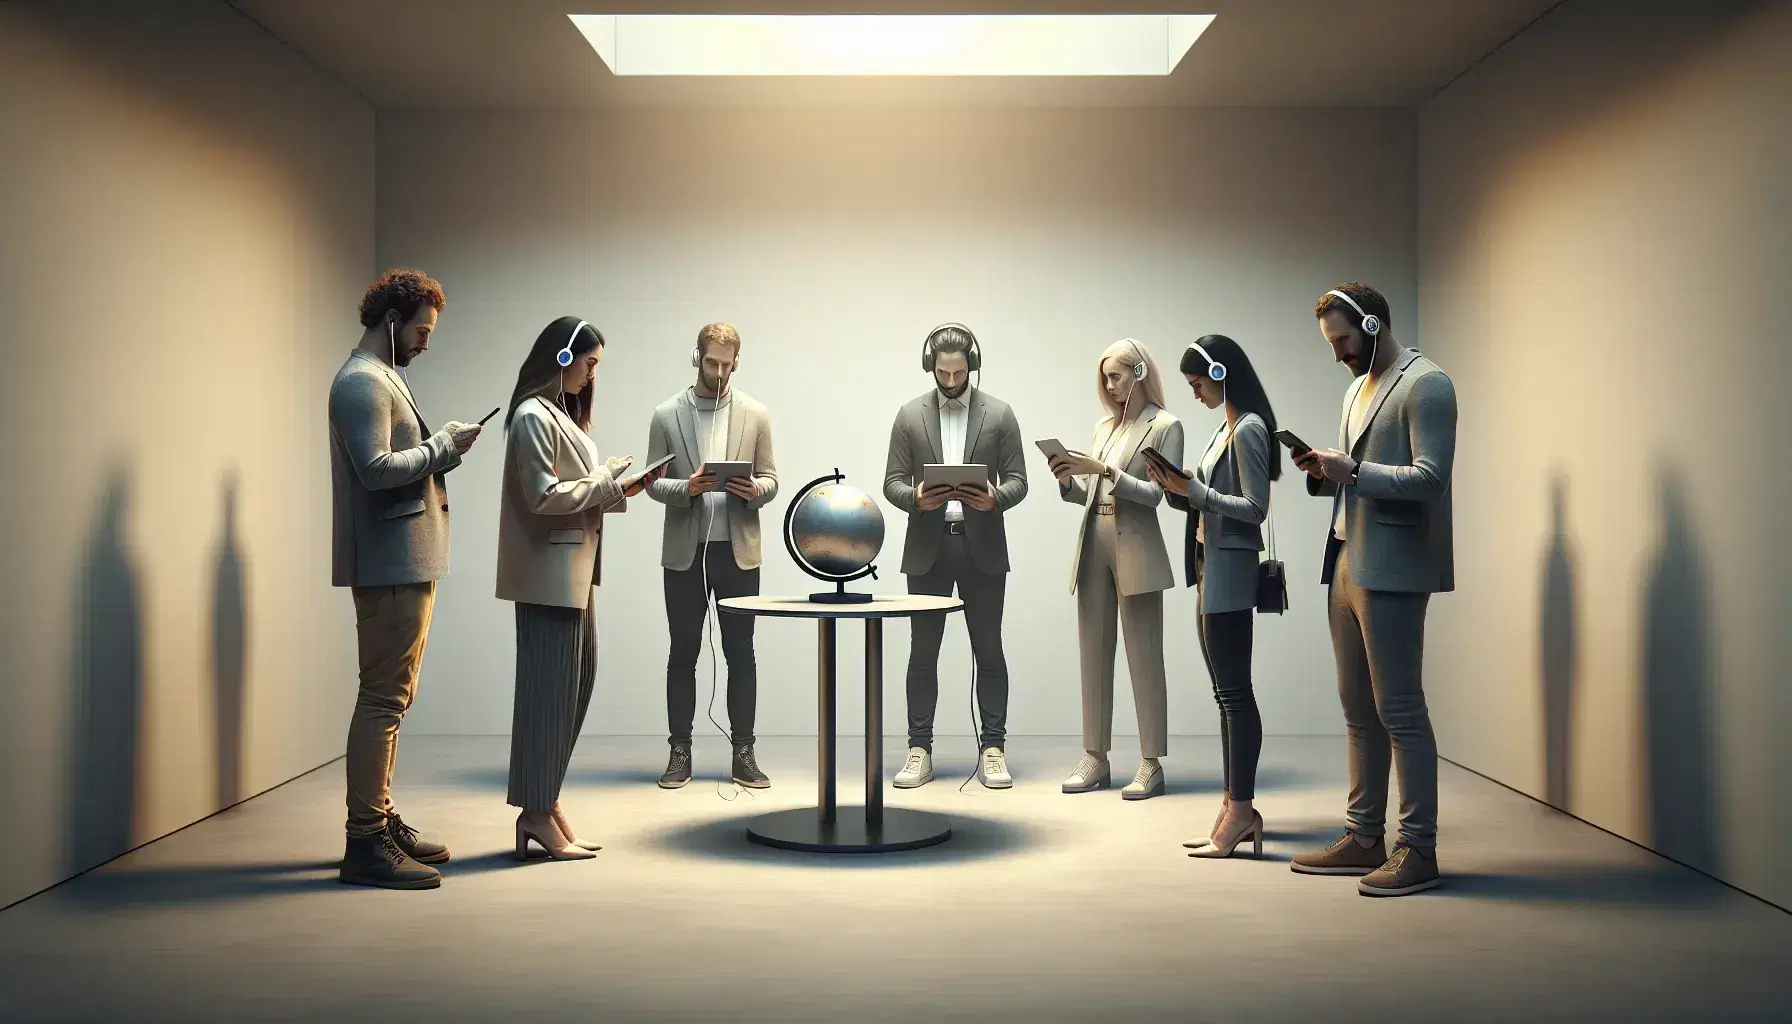 Grupo de cinco personas con dispositivos tecnológicos en un aula interactuando alrededor de una mesa con un globo, reflejando comunicación y colaboración.